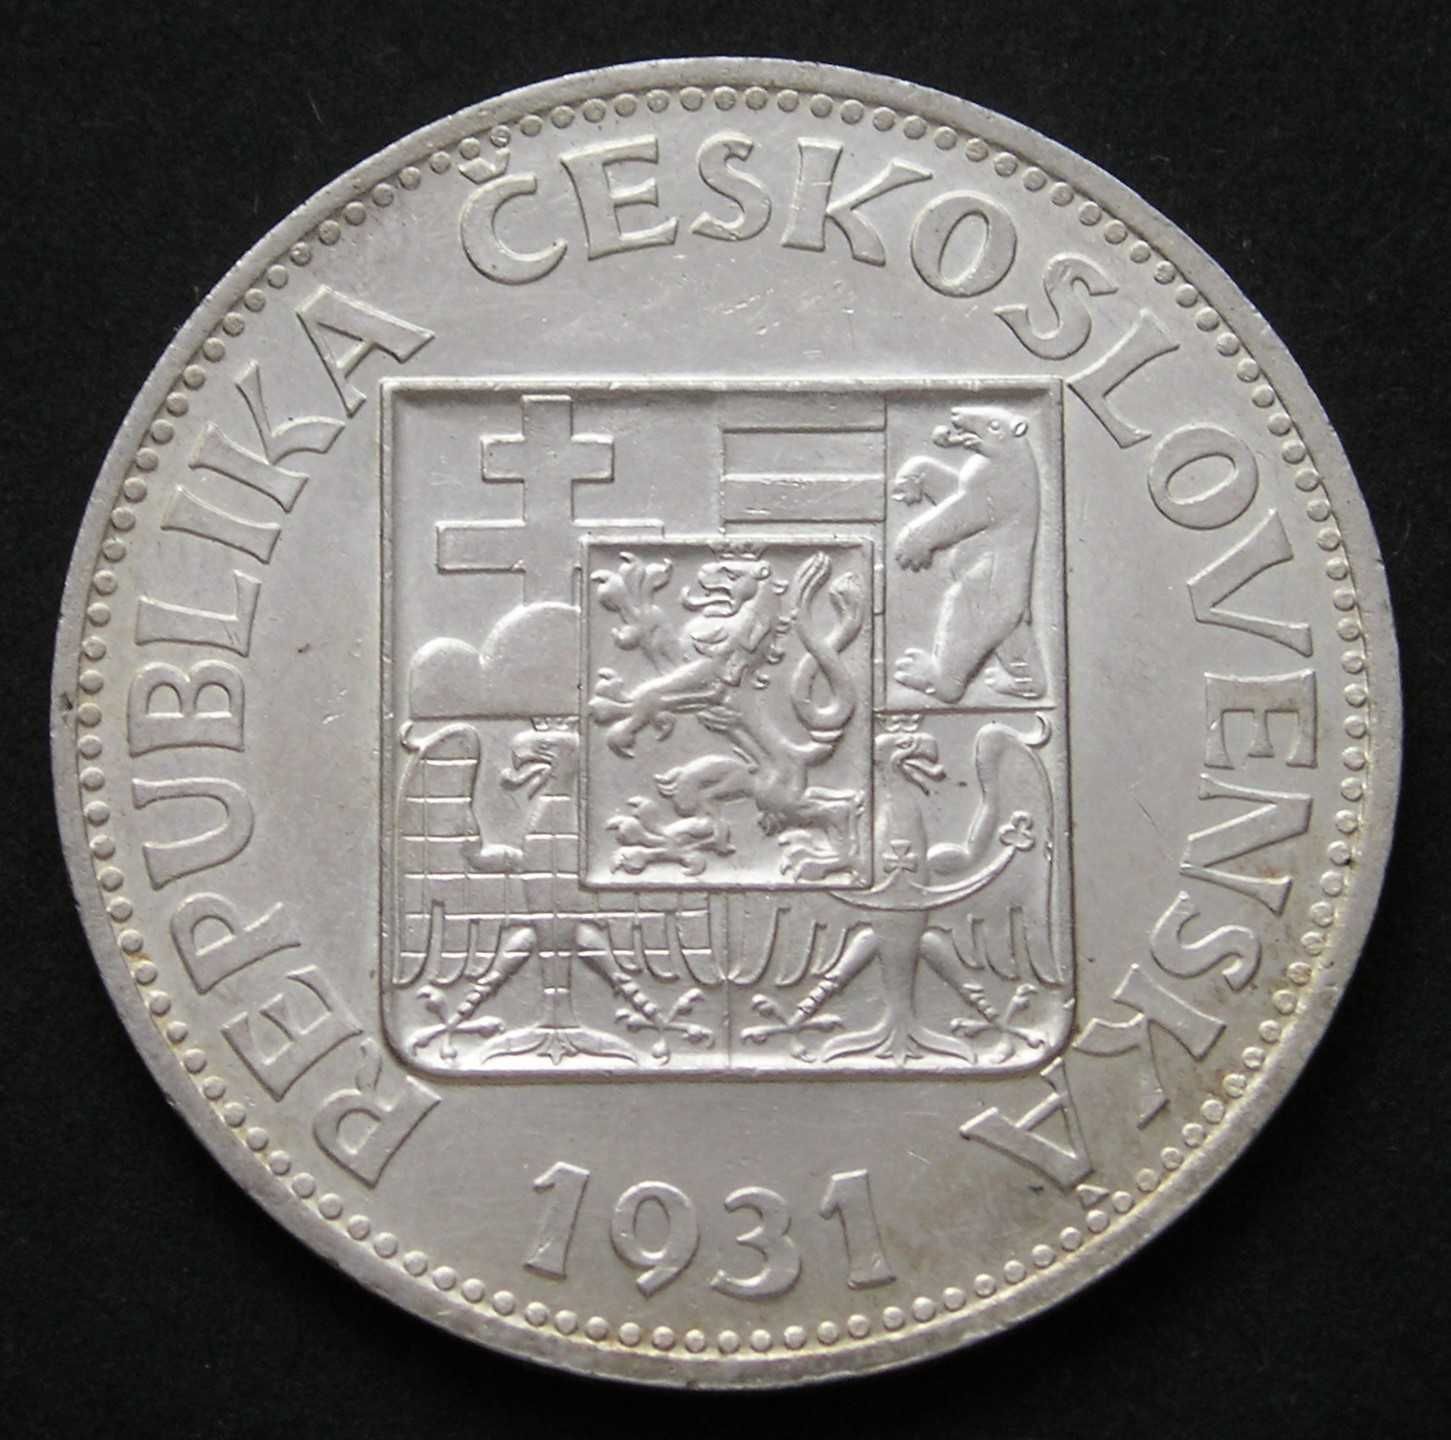 Czechosłowacja 10 koron 1931 - srebro - stan menniczy -